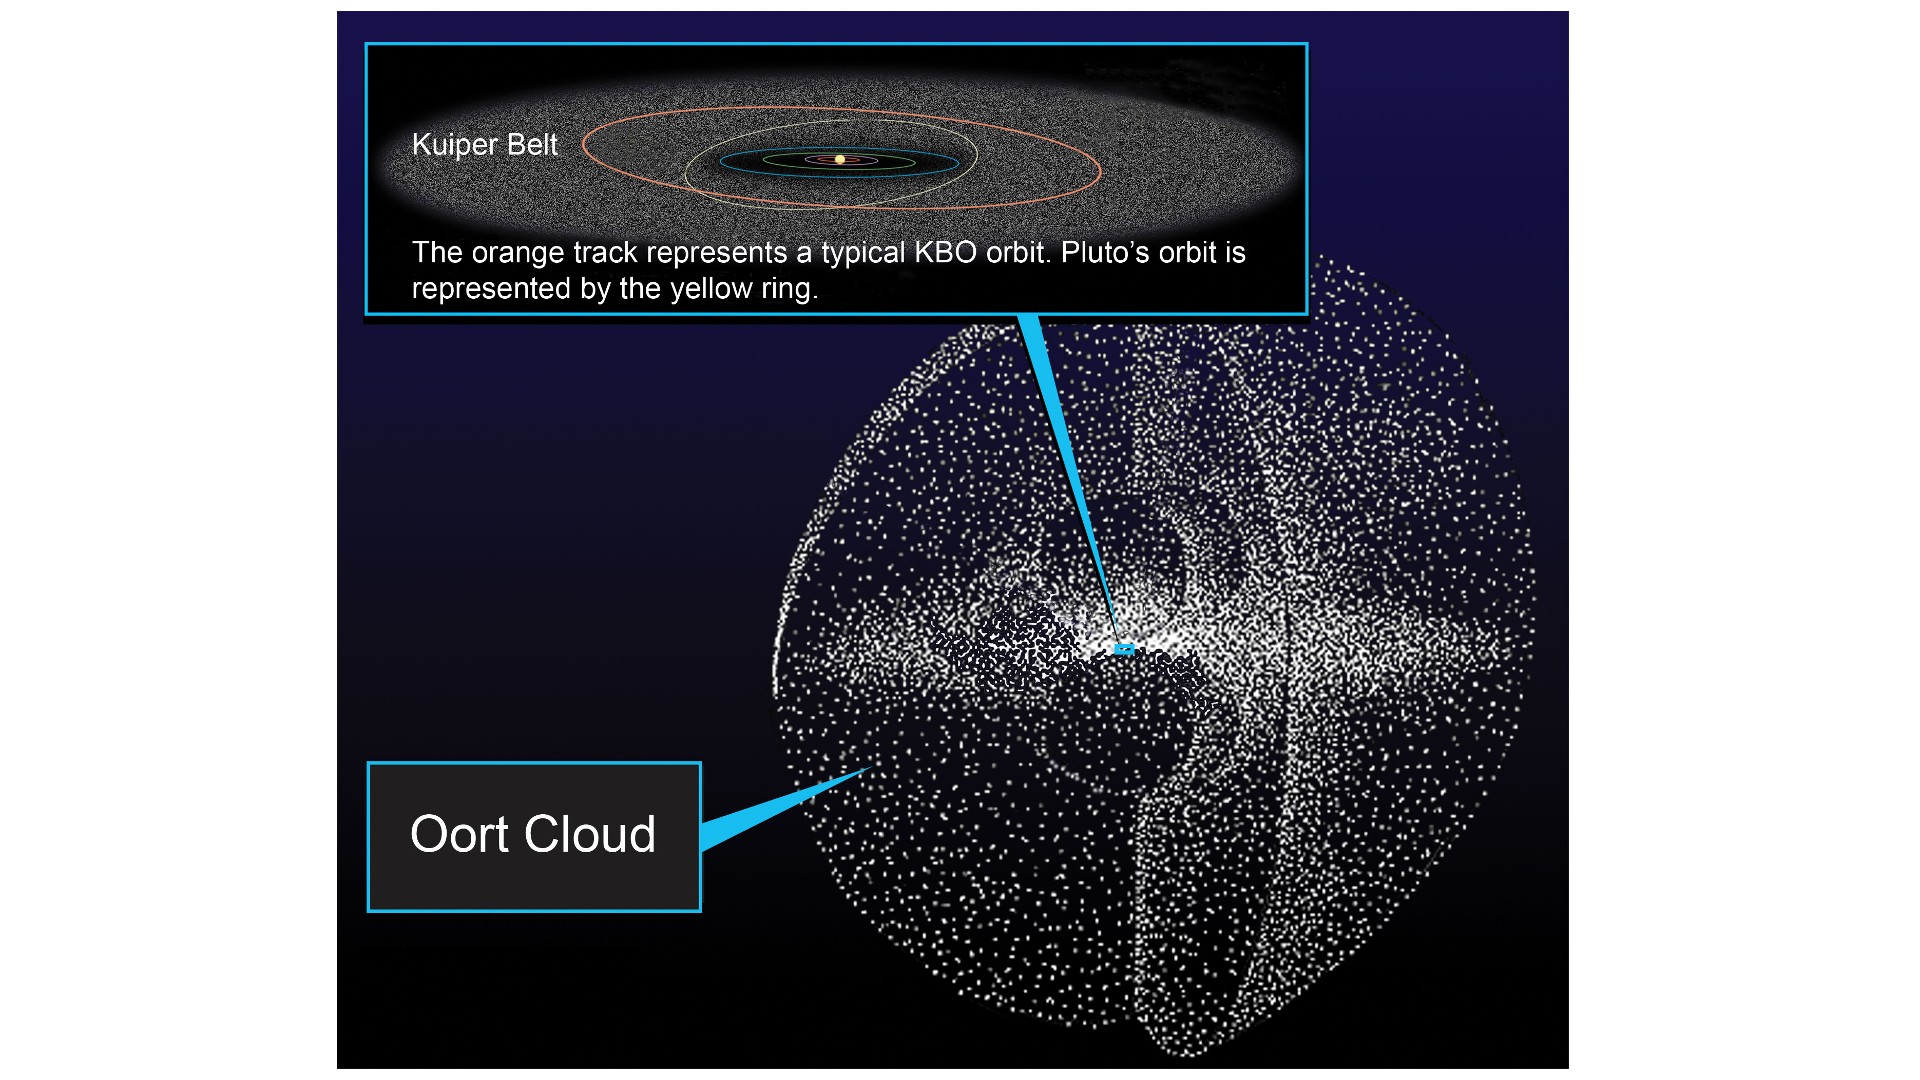 Une illustration de la ceinture de Kuiper et du nuage d'Oort par rapport à notre système solaire.  11 décembre 2009. NASA